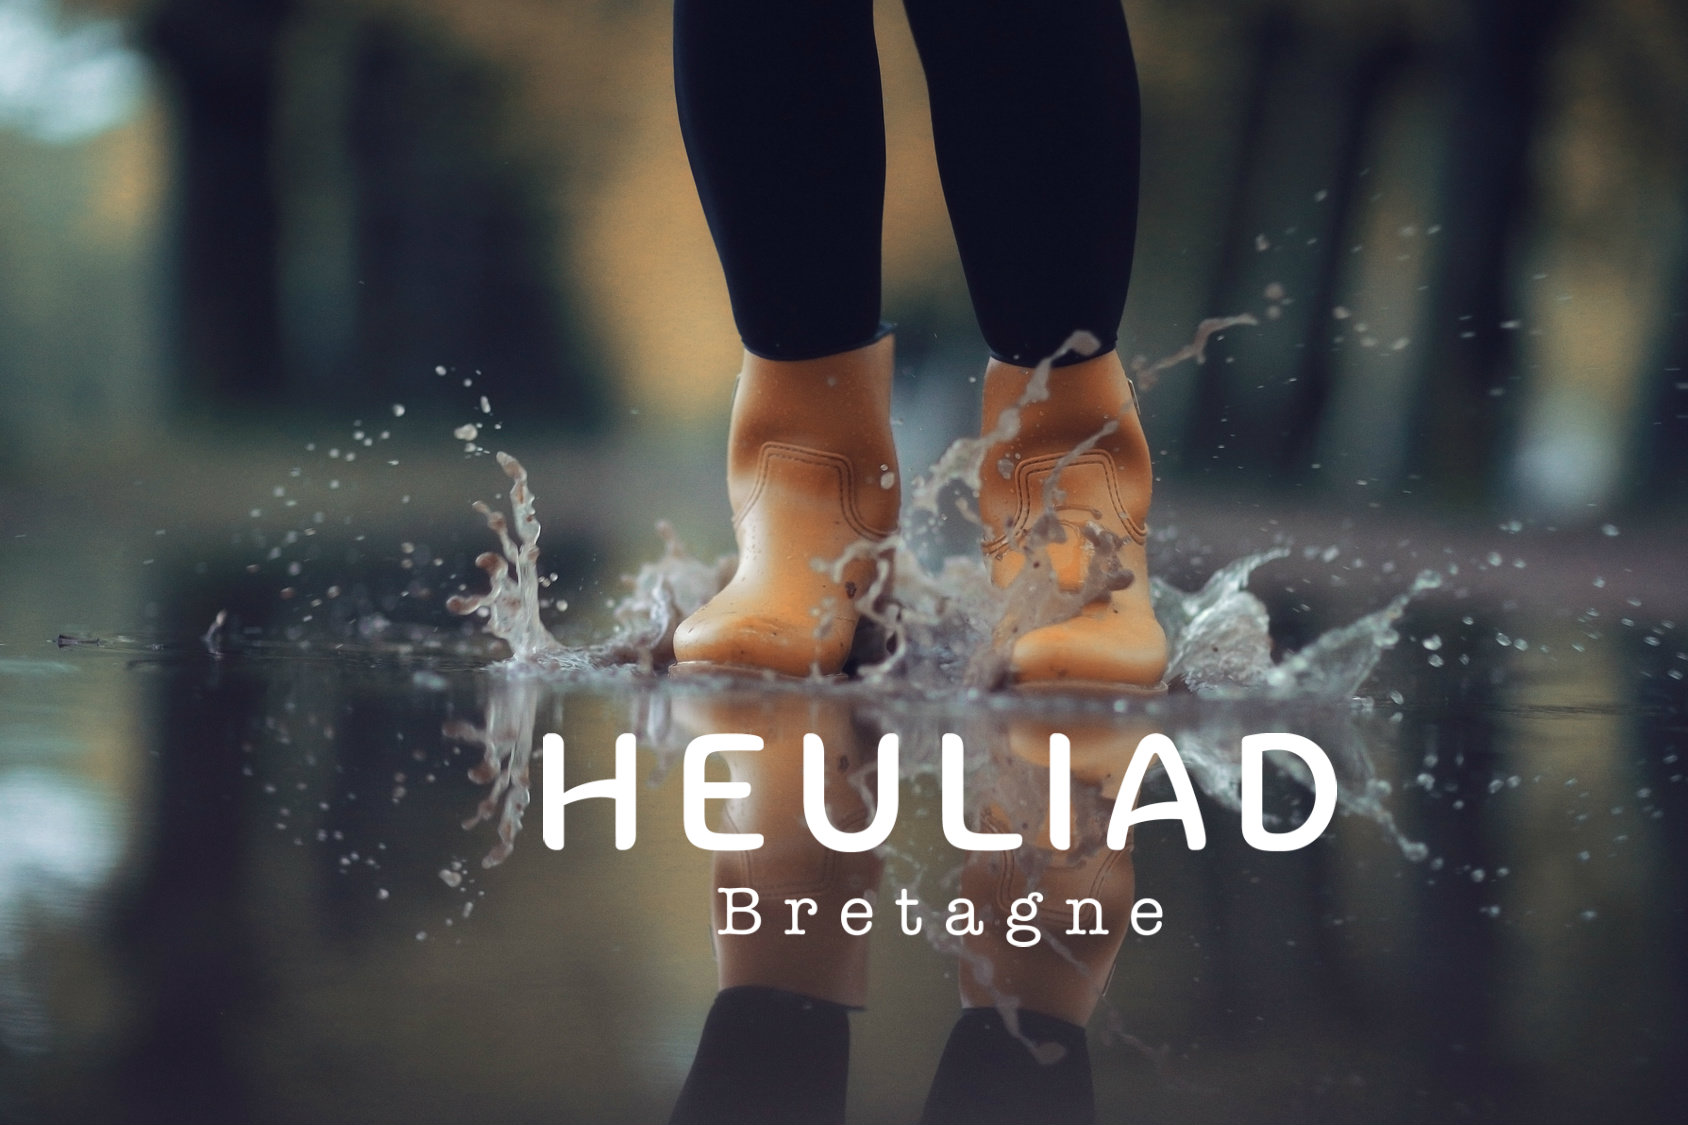 Avez-vous vu le film Heuliad ?